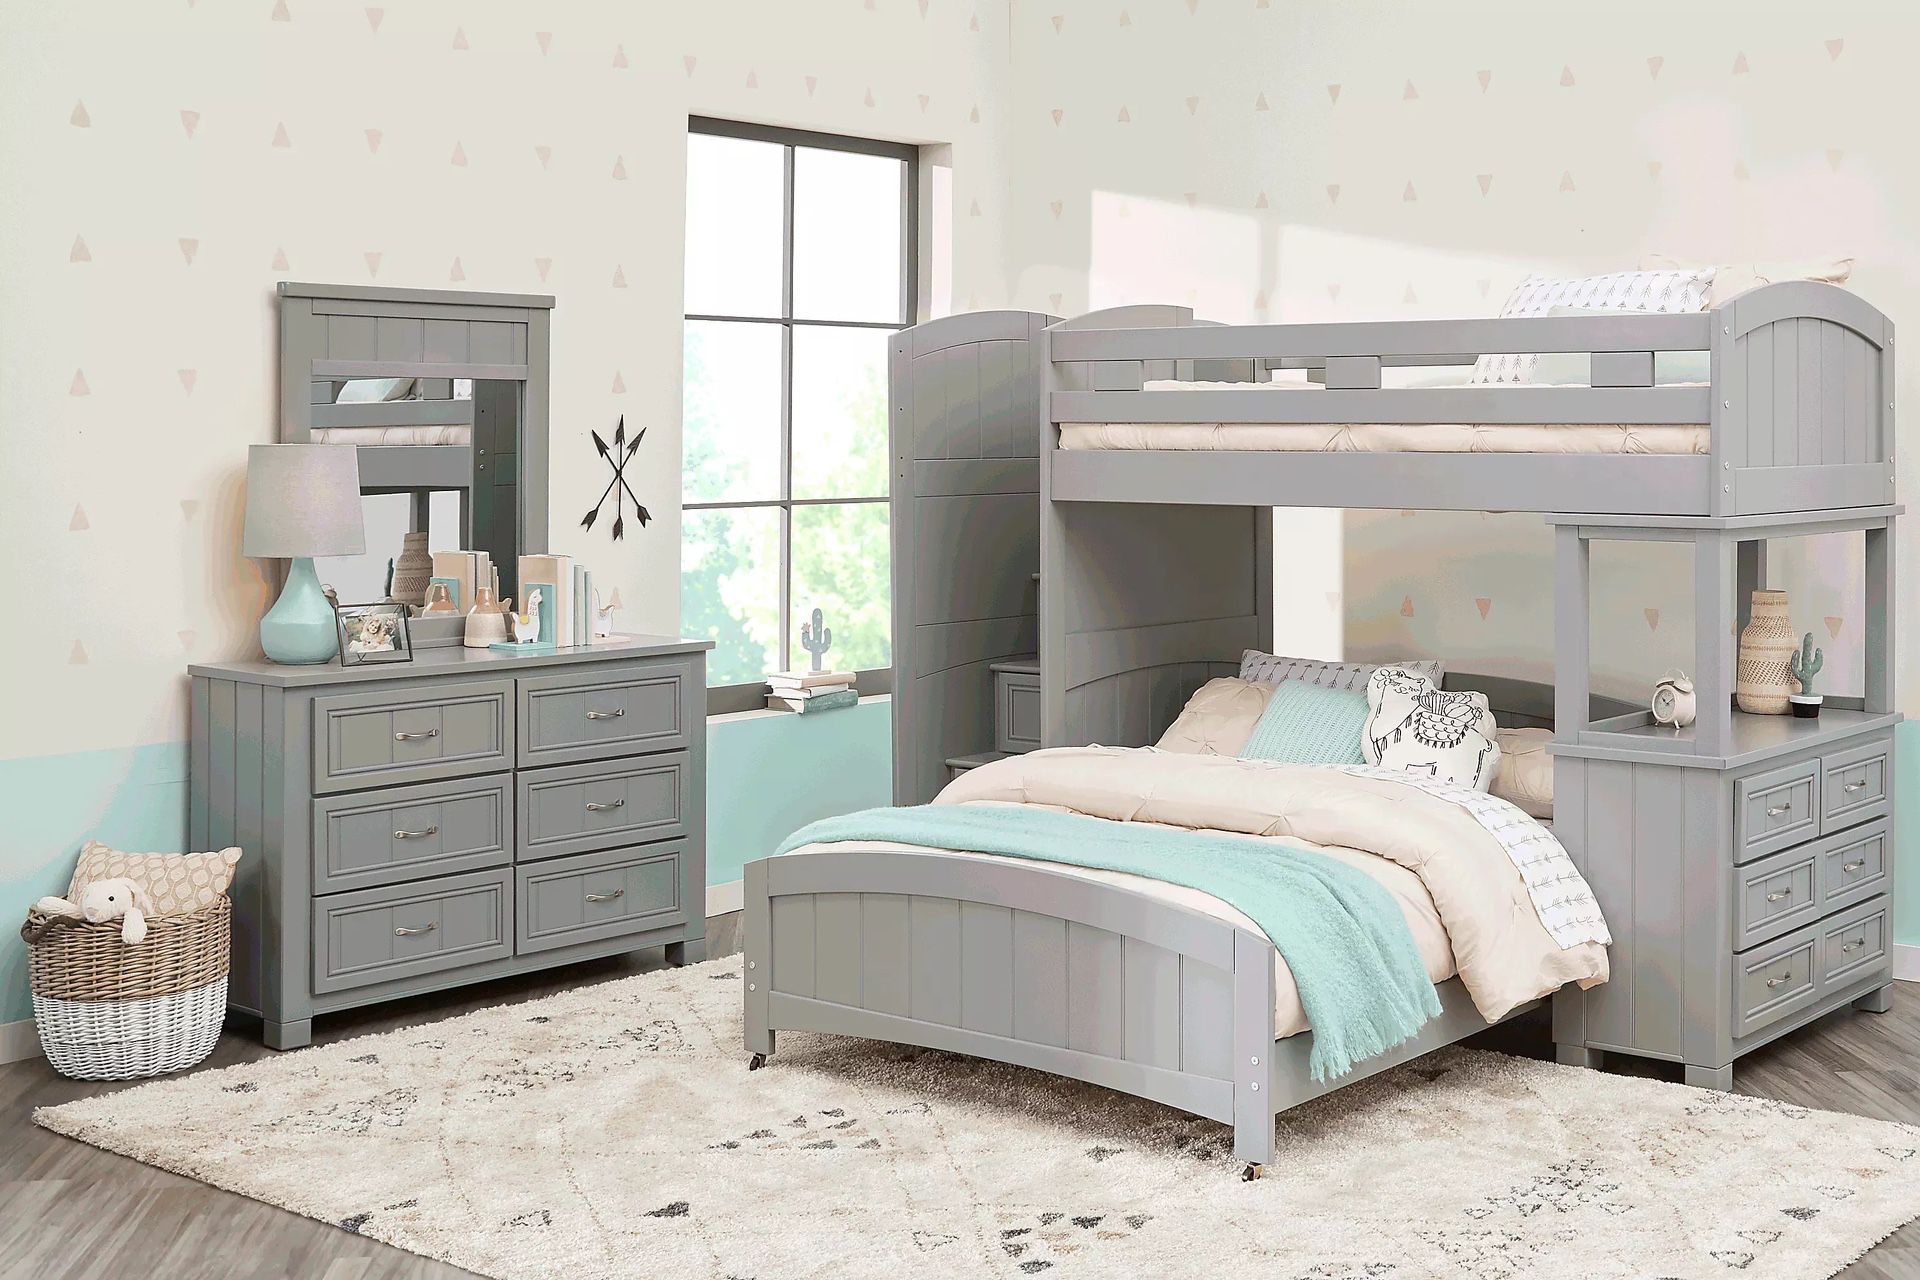 Bunk bed bedroom set